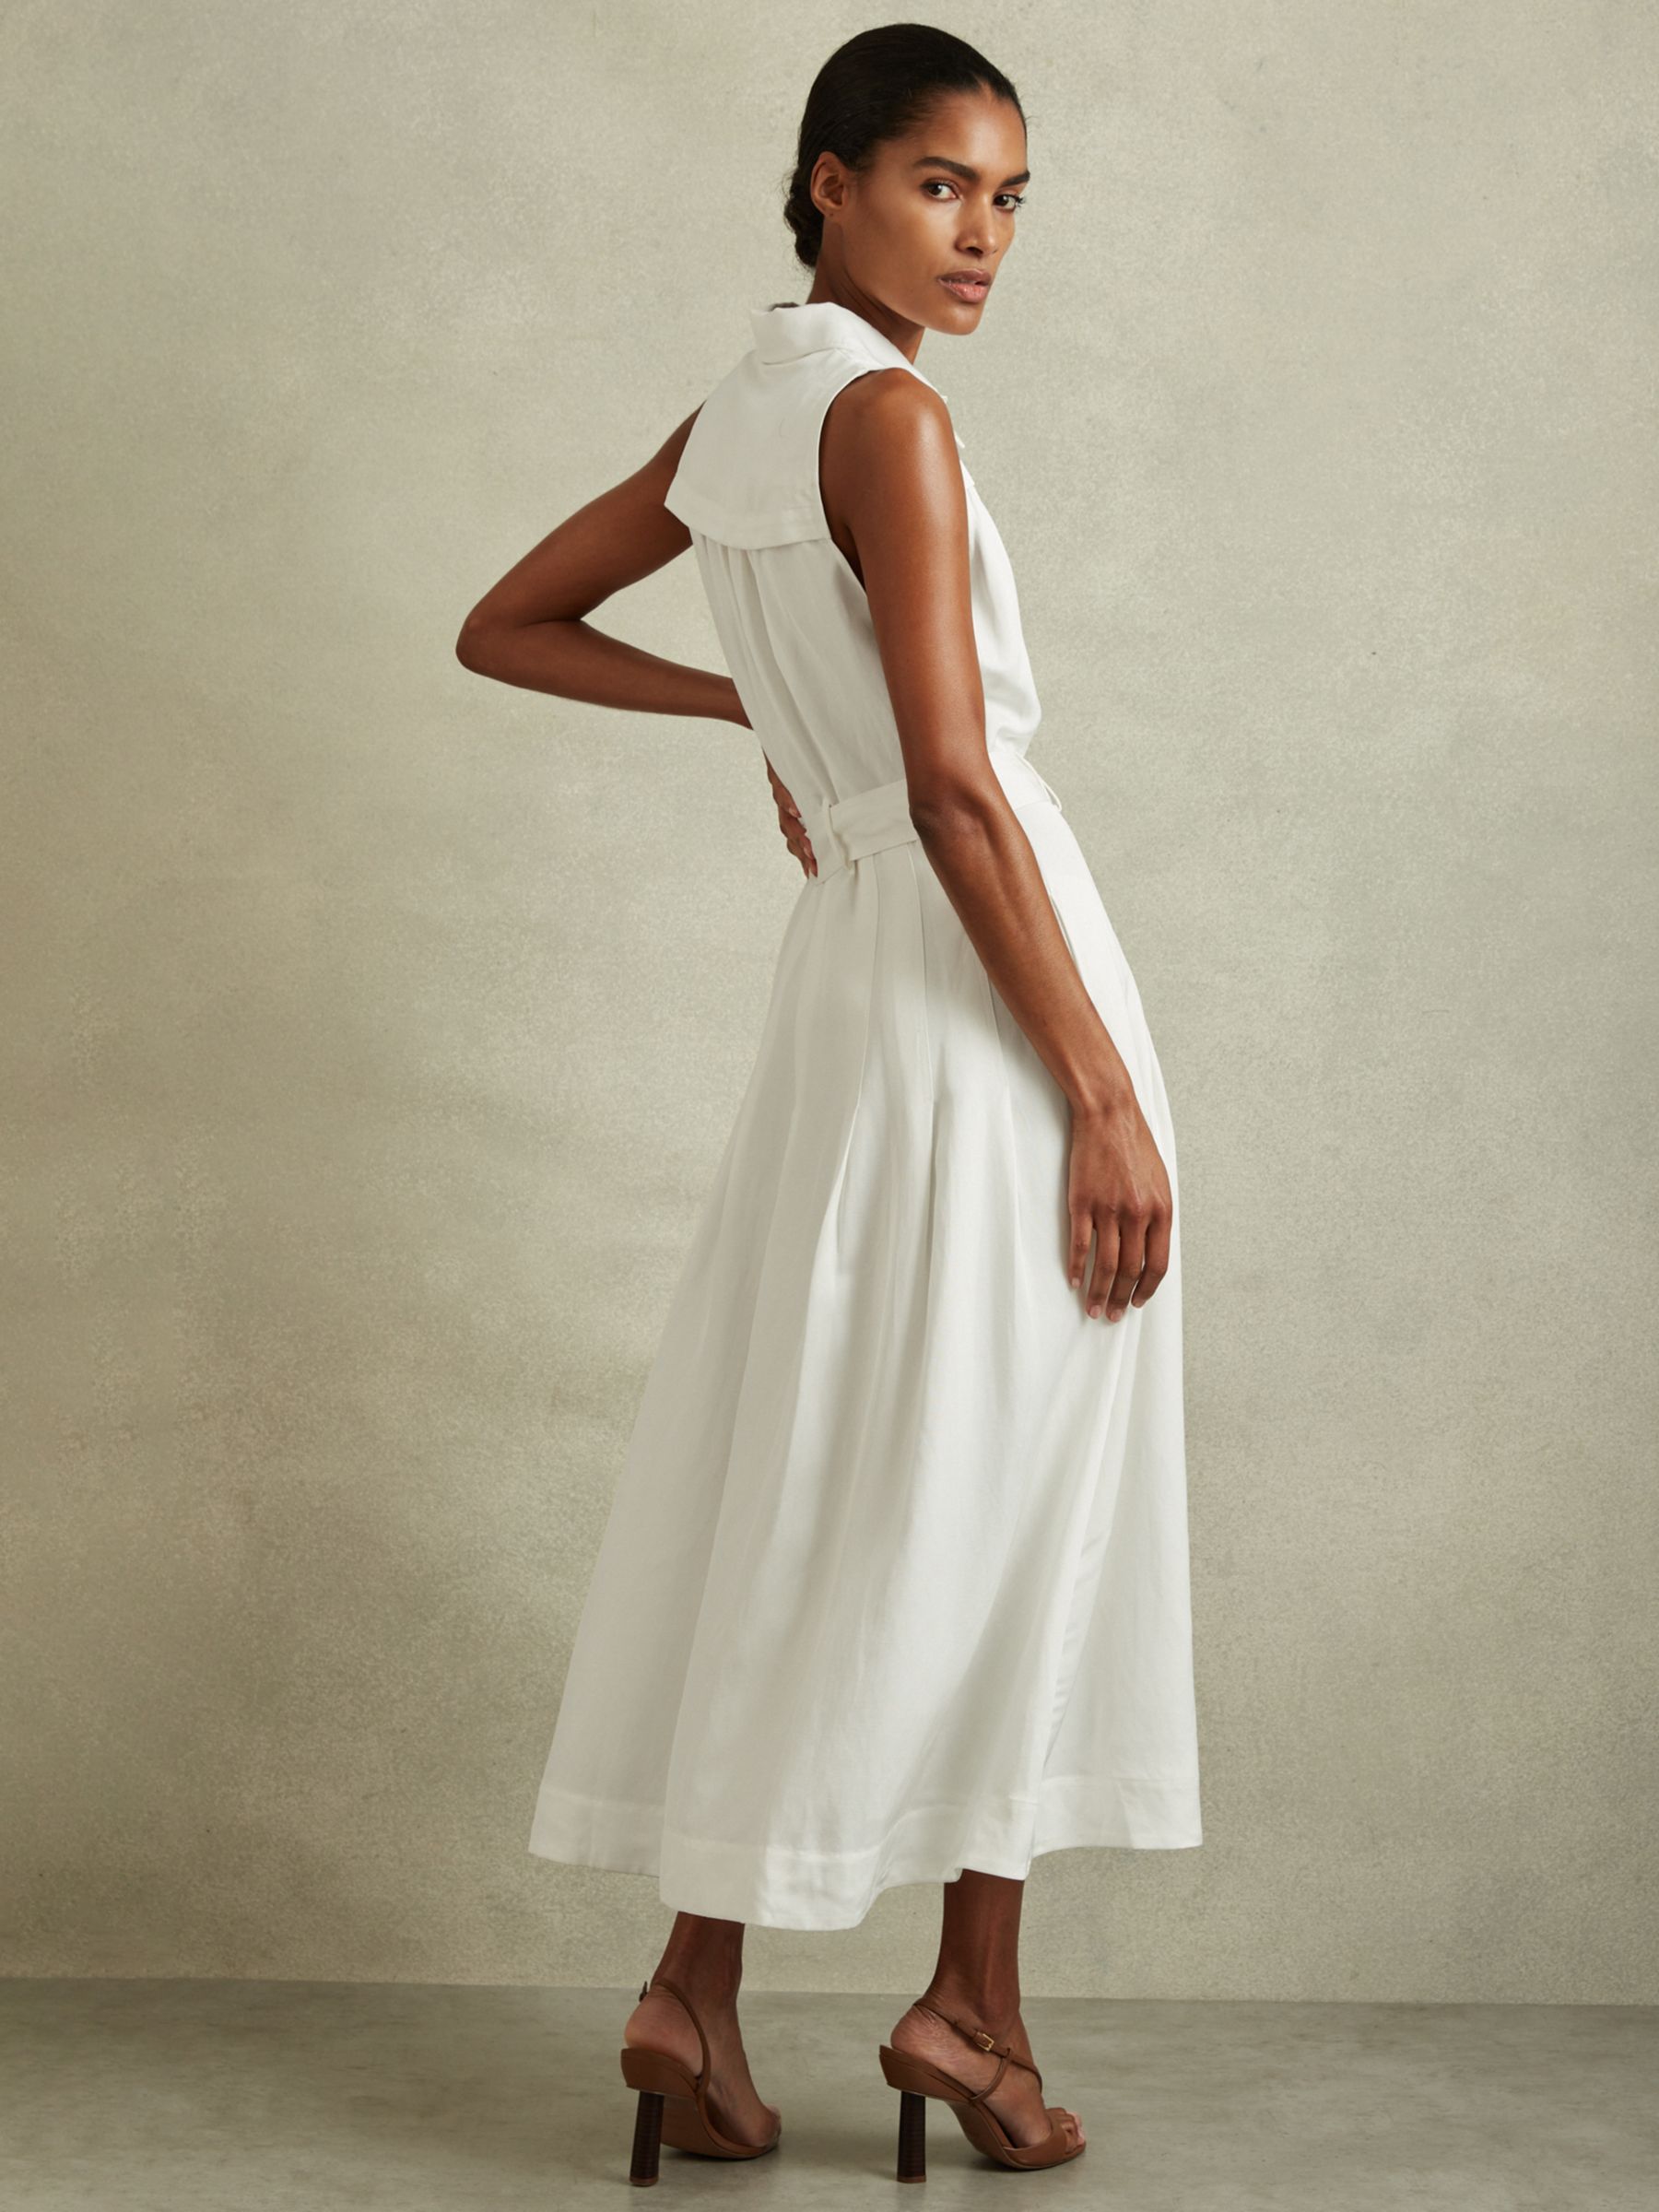 Buy Reiss Petite Heidi Linen Blend Sleeveless Midi Shirt Dress, White Online at johnlewis.com